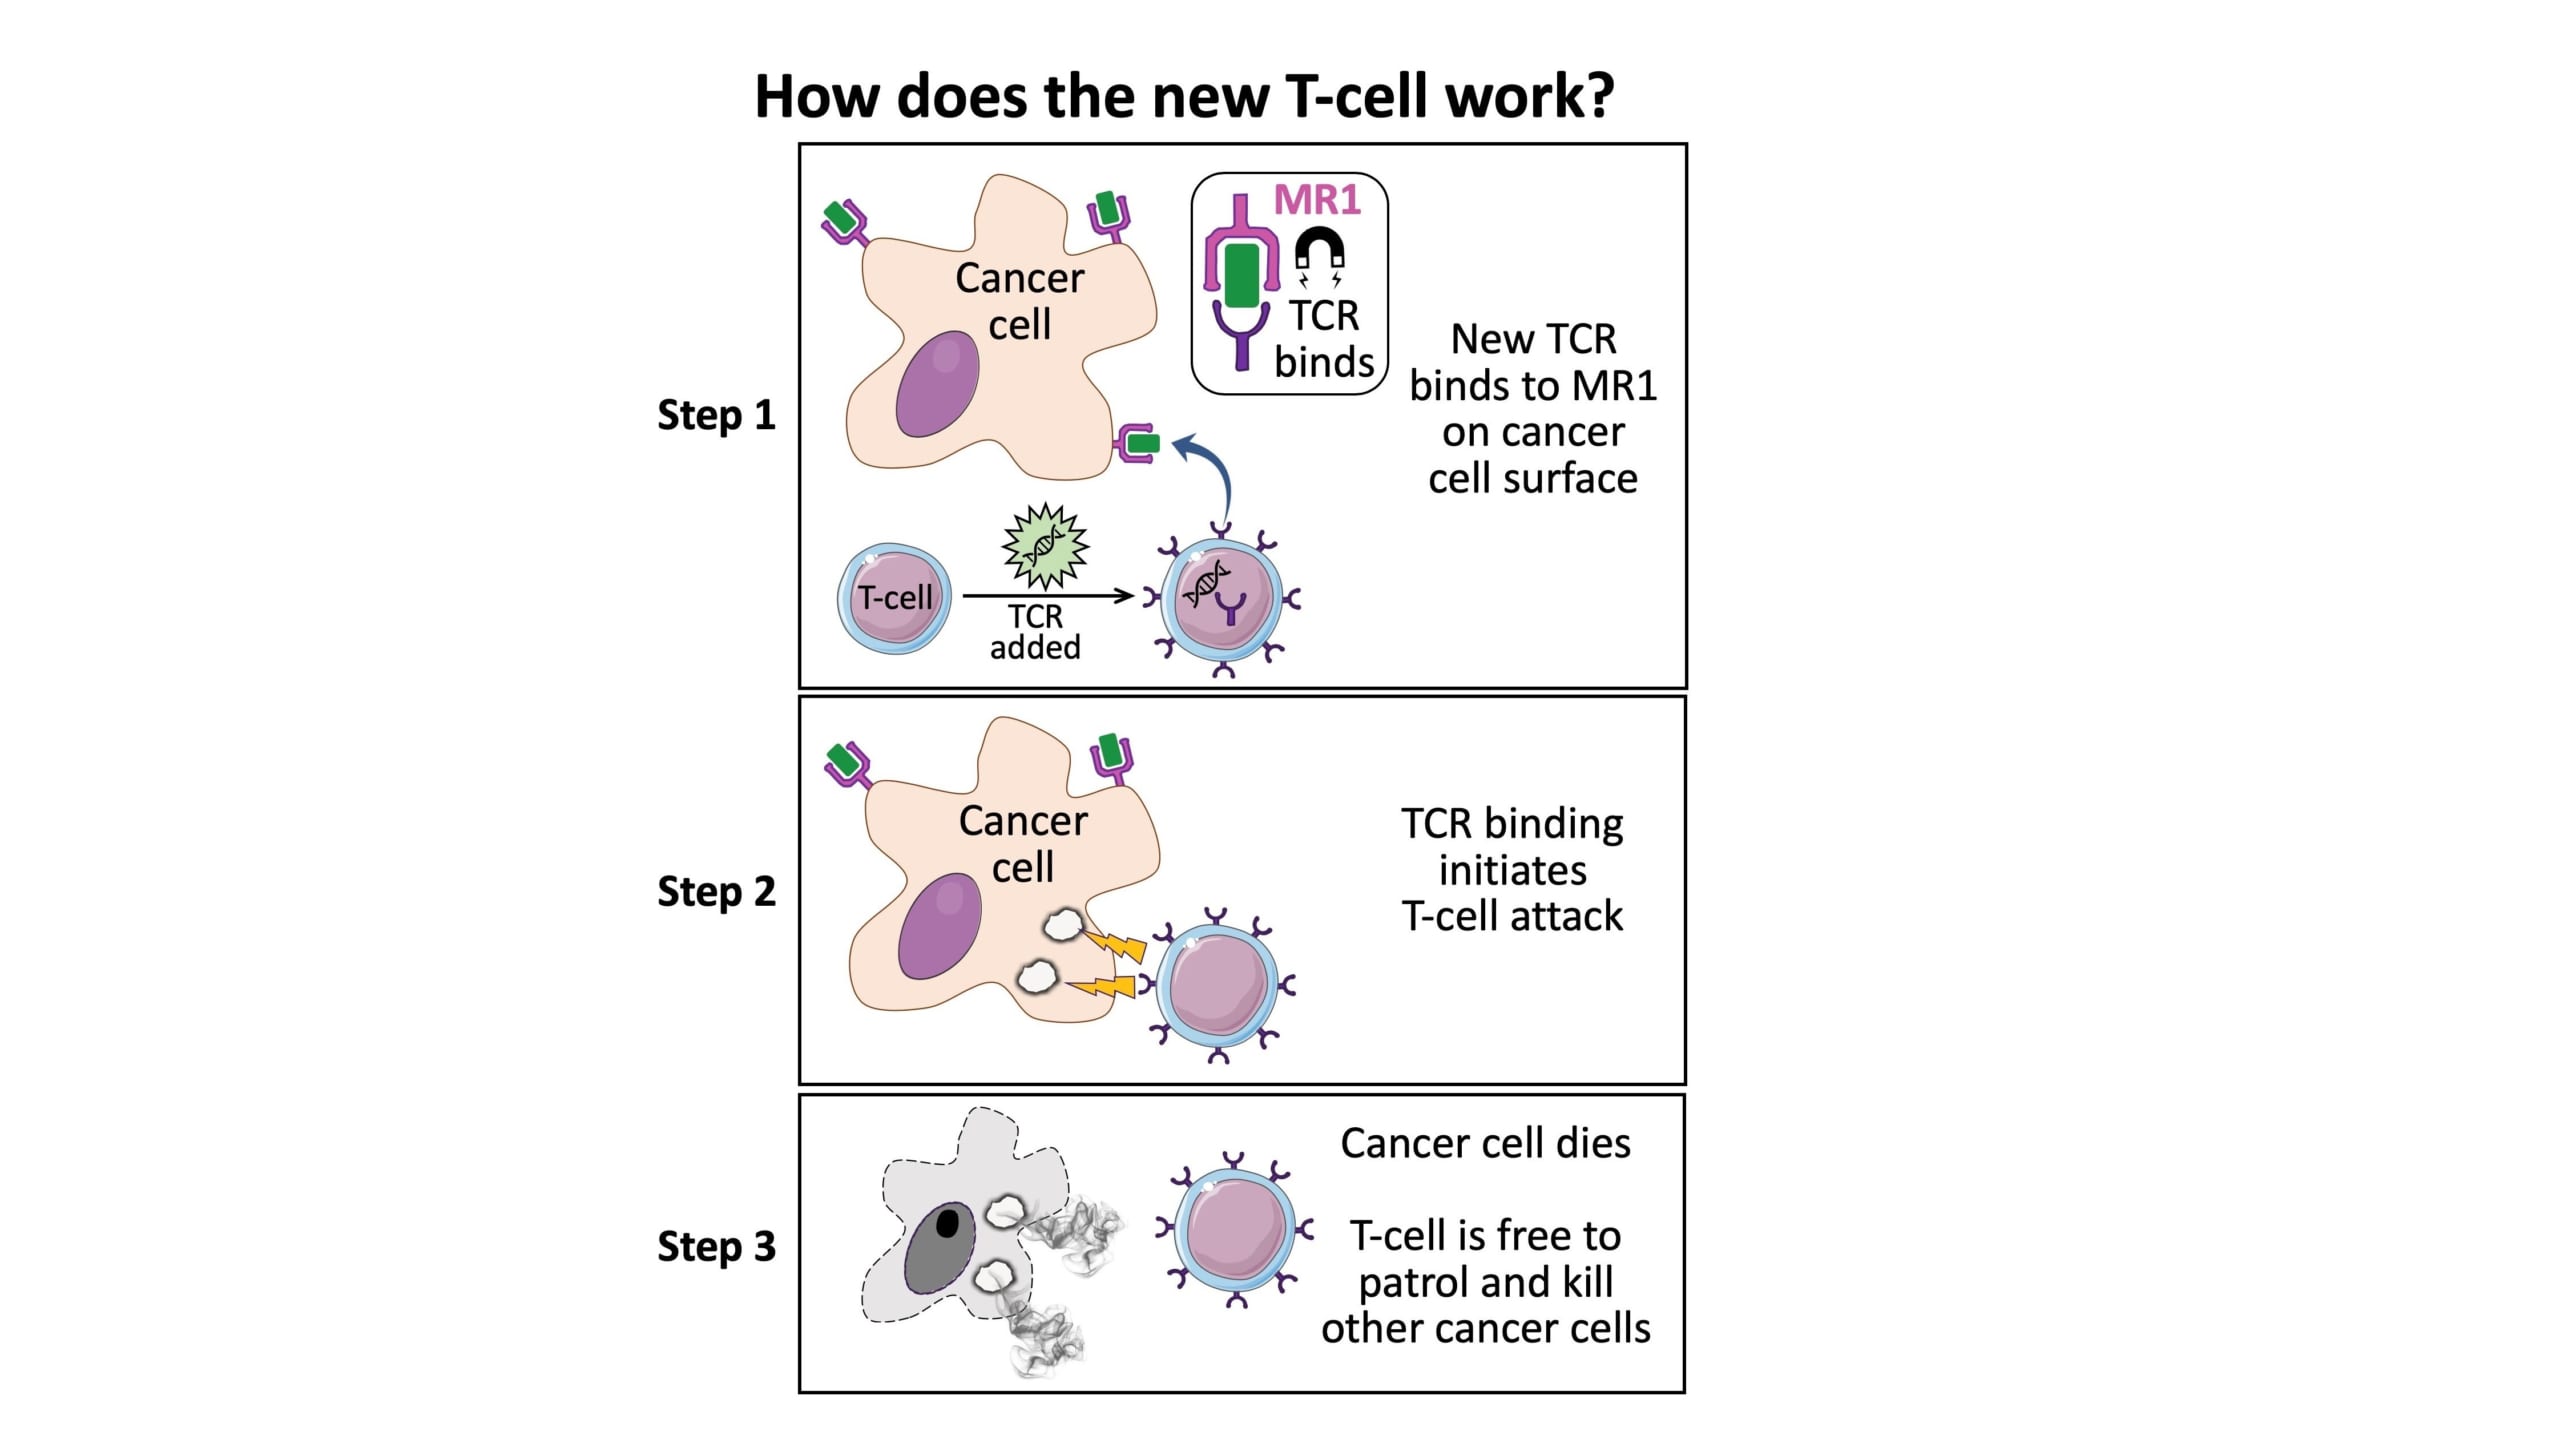 あらゆる癌細胞を攻撃できる「万能型」免疫細胞が発見されるの画像 3/4